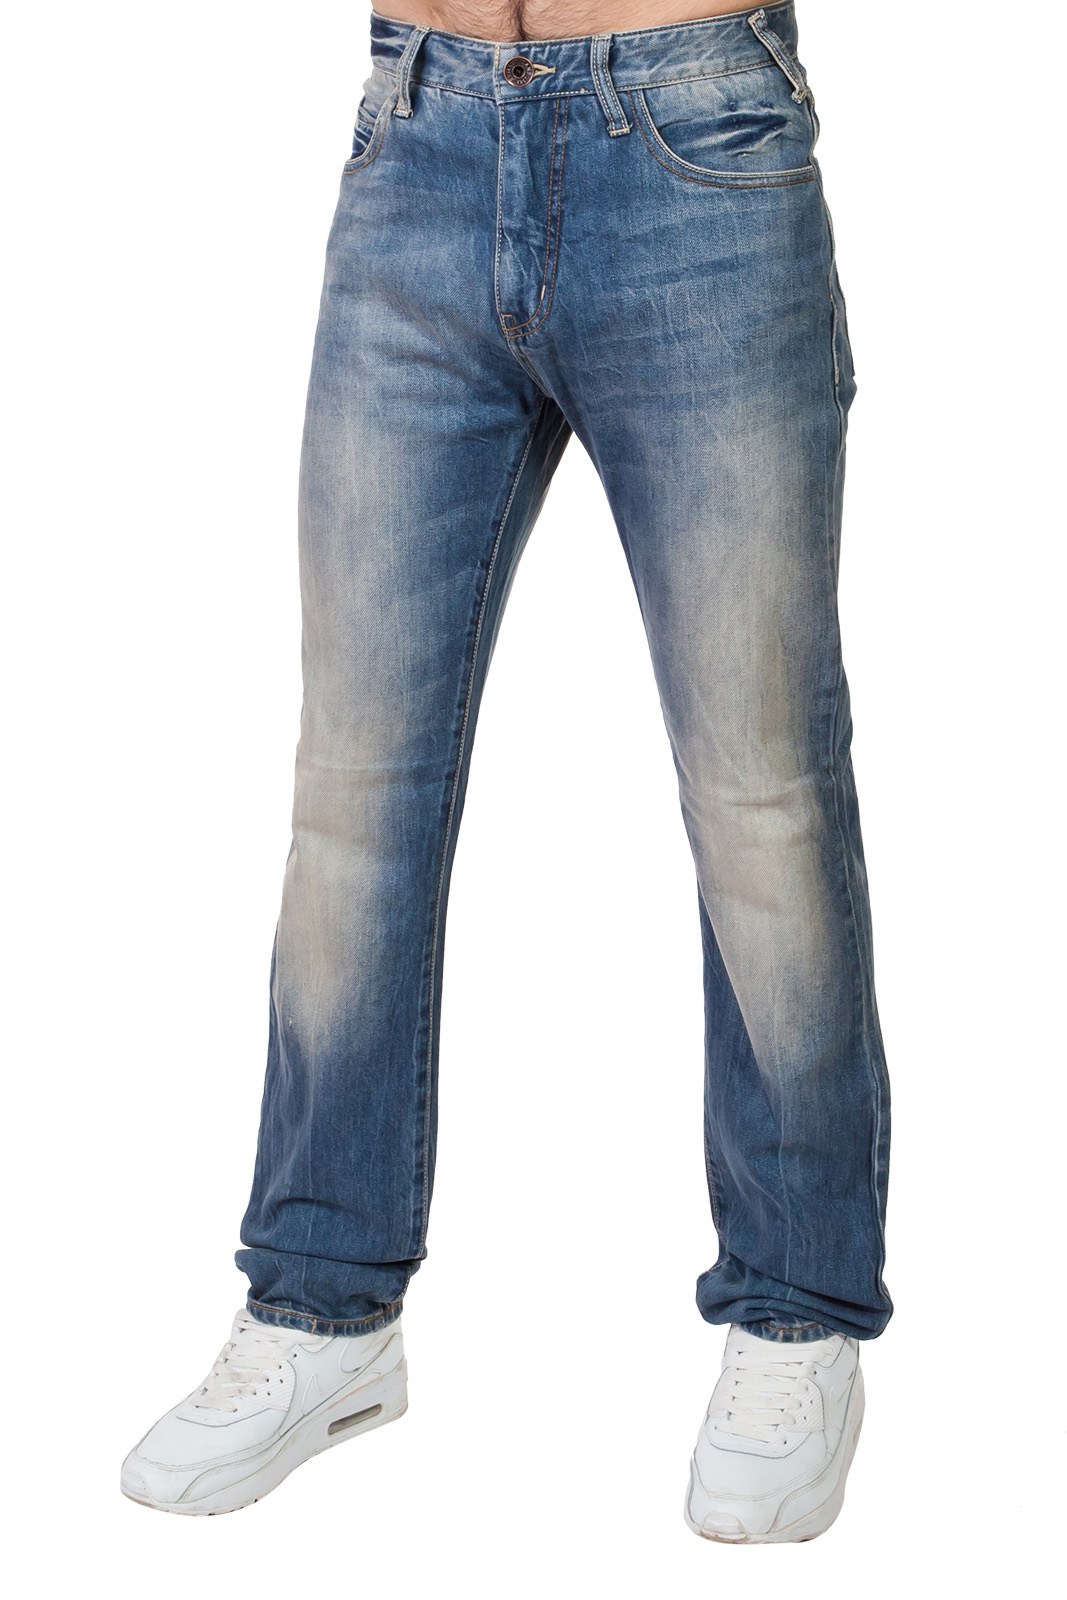 Недорогие джинсы для парней и мужчин